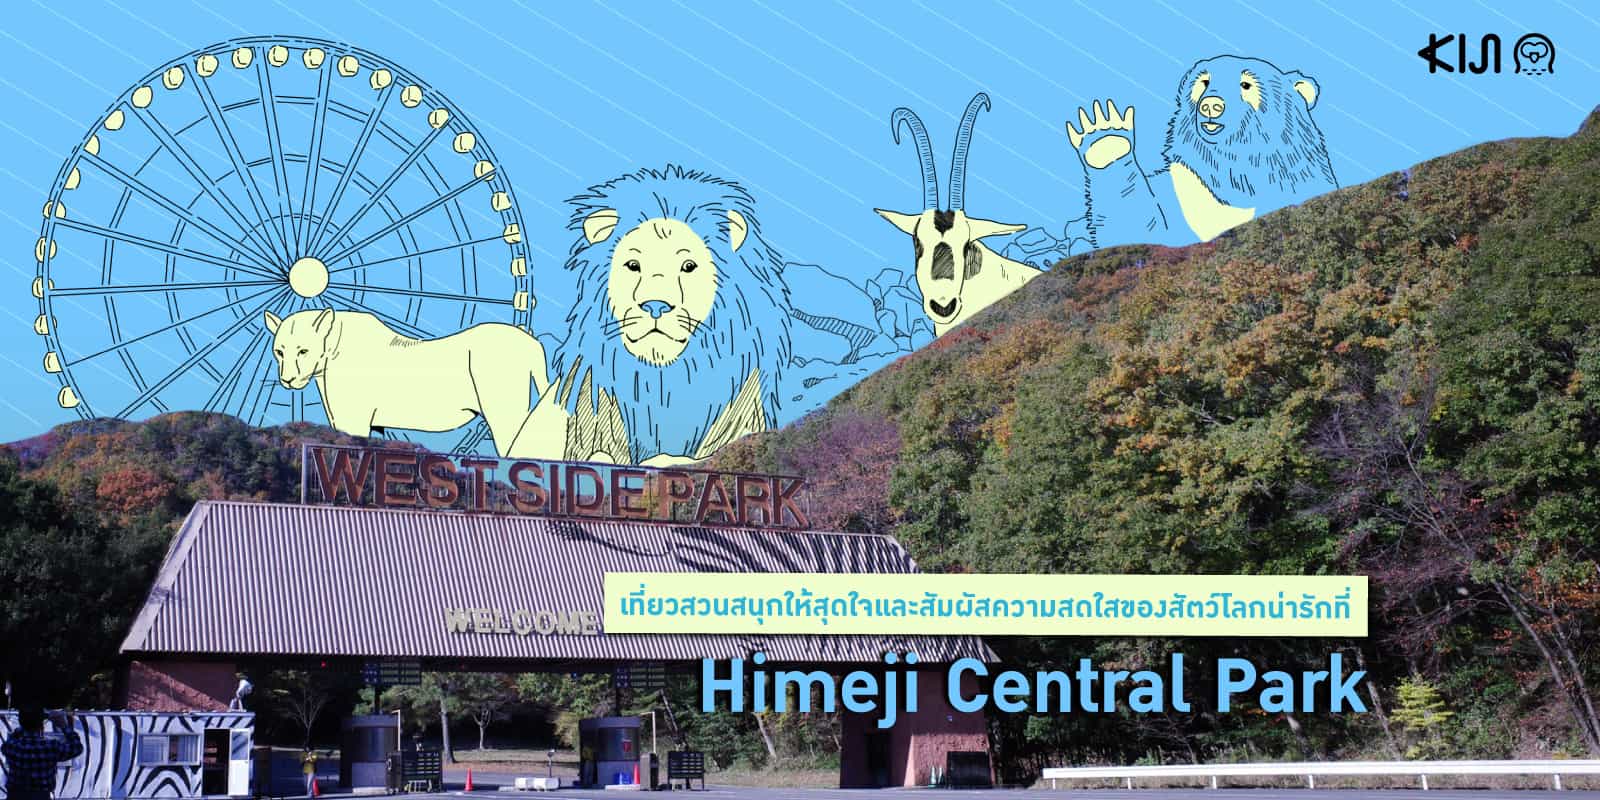 Himeji Central Park